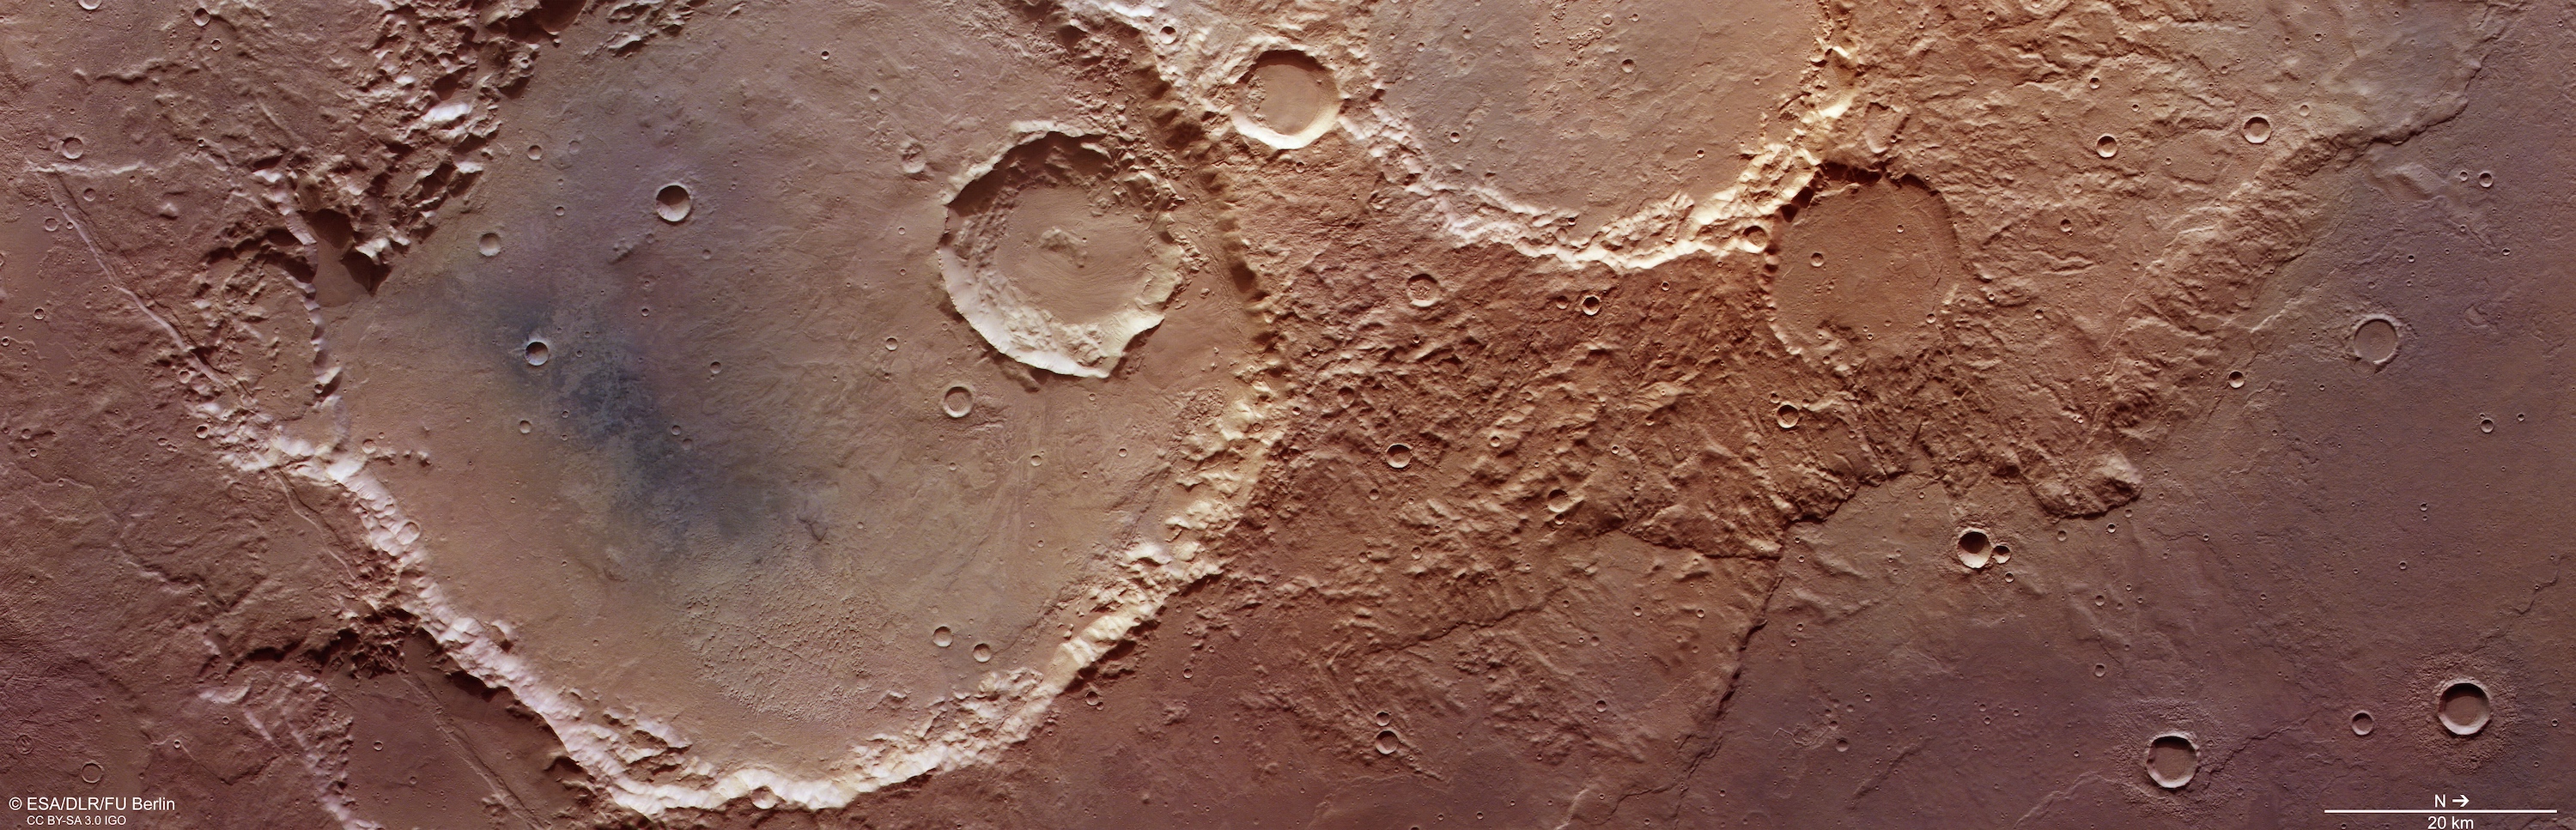 Plusieurs cratères d'impact dans la région de Terra Sirenum sur Mars. Image capturée par la caméra HRSC de la sonde spatiale Mars Express le 5 avril 2022. La résolution est de 15 mètres par pixel. © ESA, DLR, FU Berlin, CC BY-SA 3.0 IGO